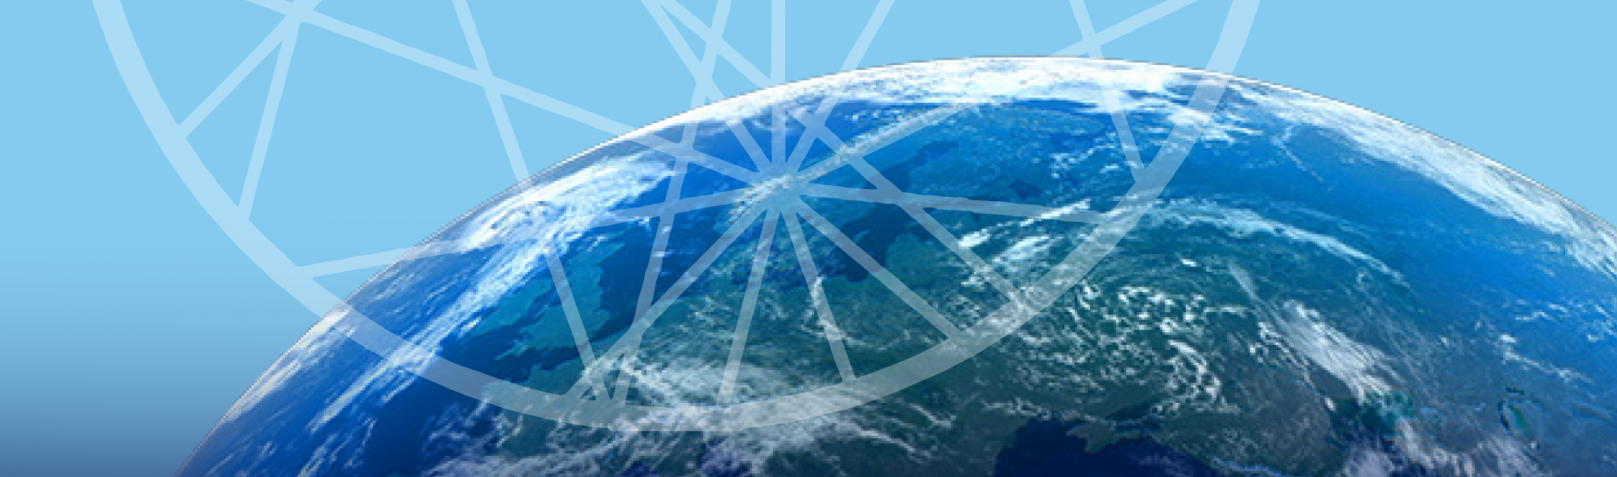 Banner of AC4 Logo over world globe